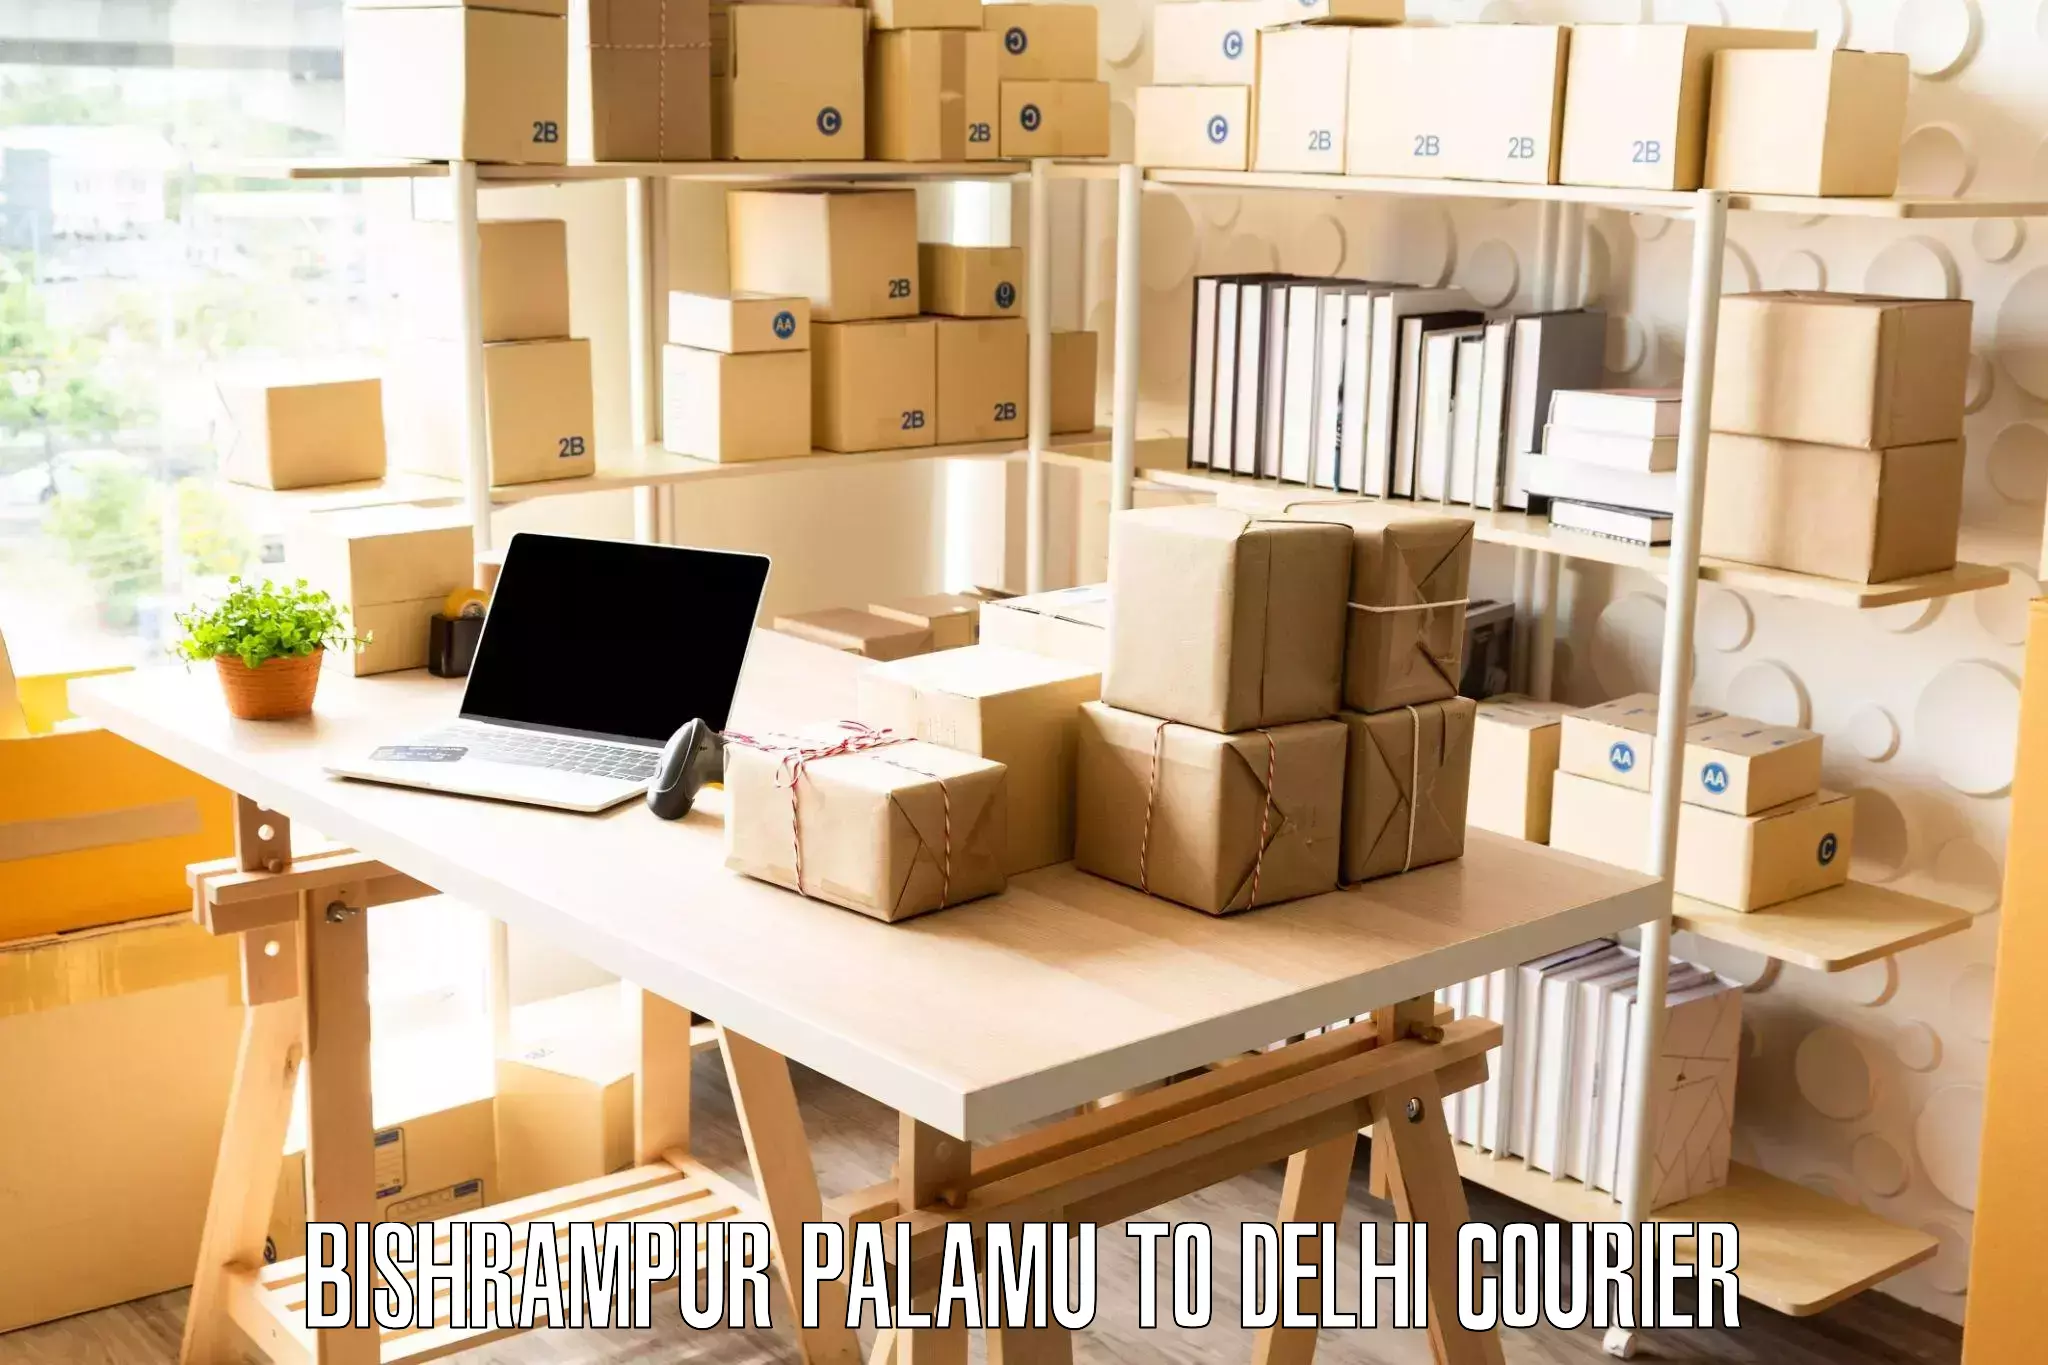 Seamless moving process Bishrampur Palamu to University of Delhi